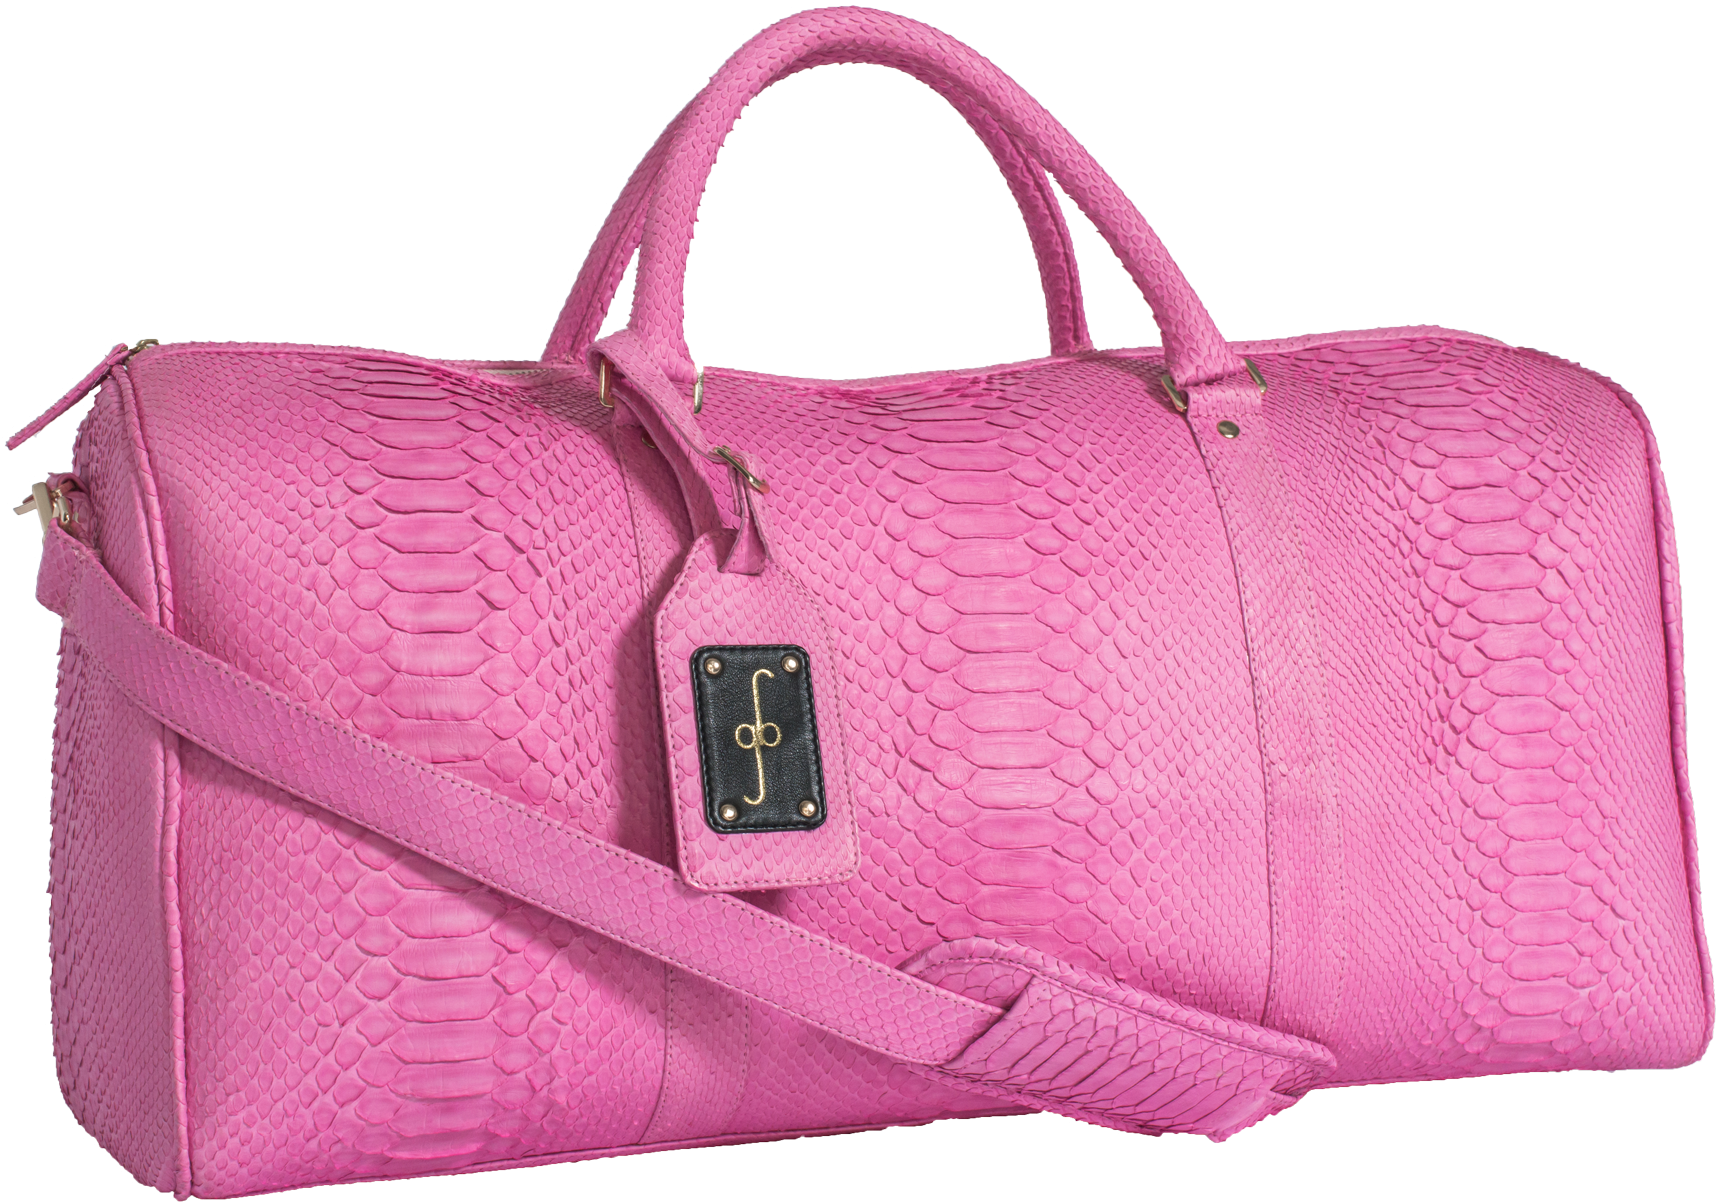 Pink Handbag Photos Free Clipart HQ PNG Image